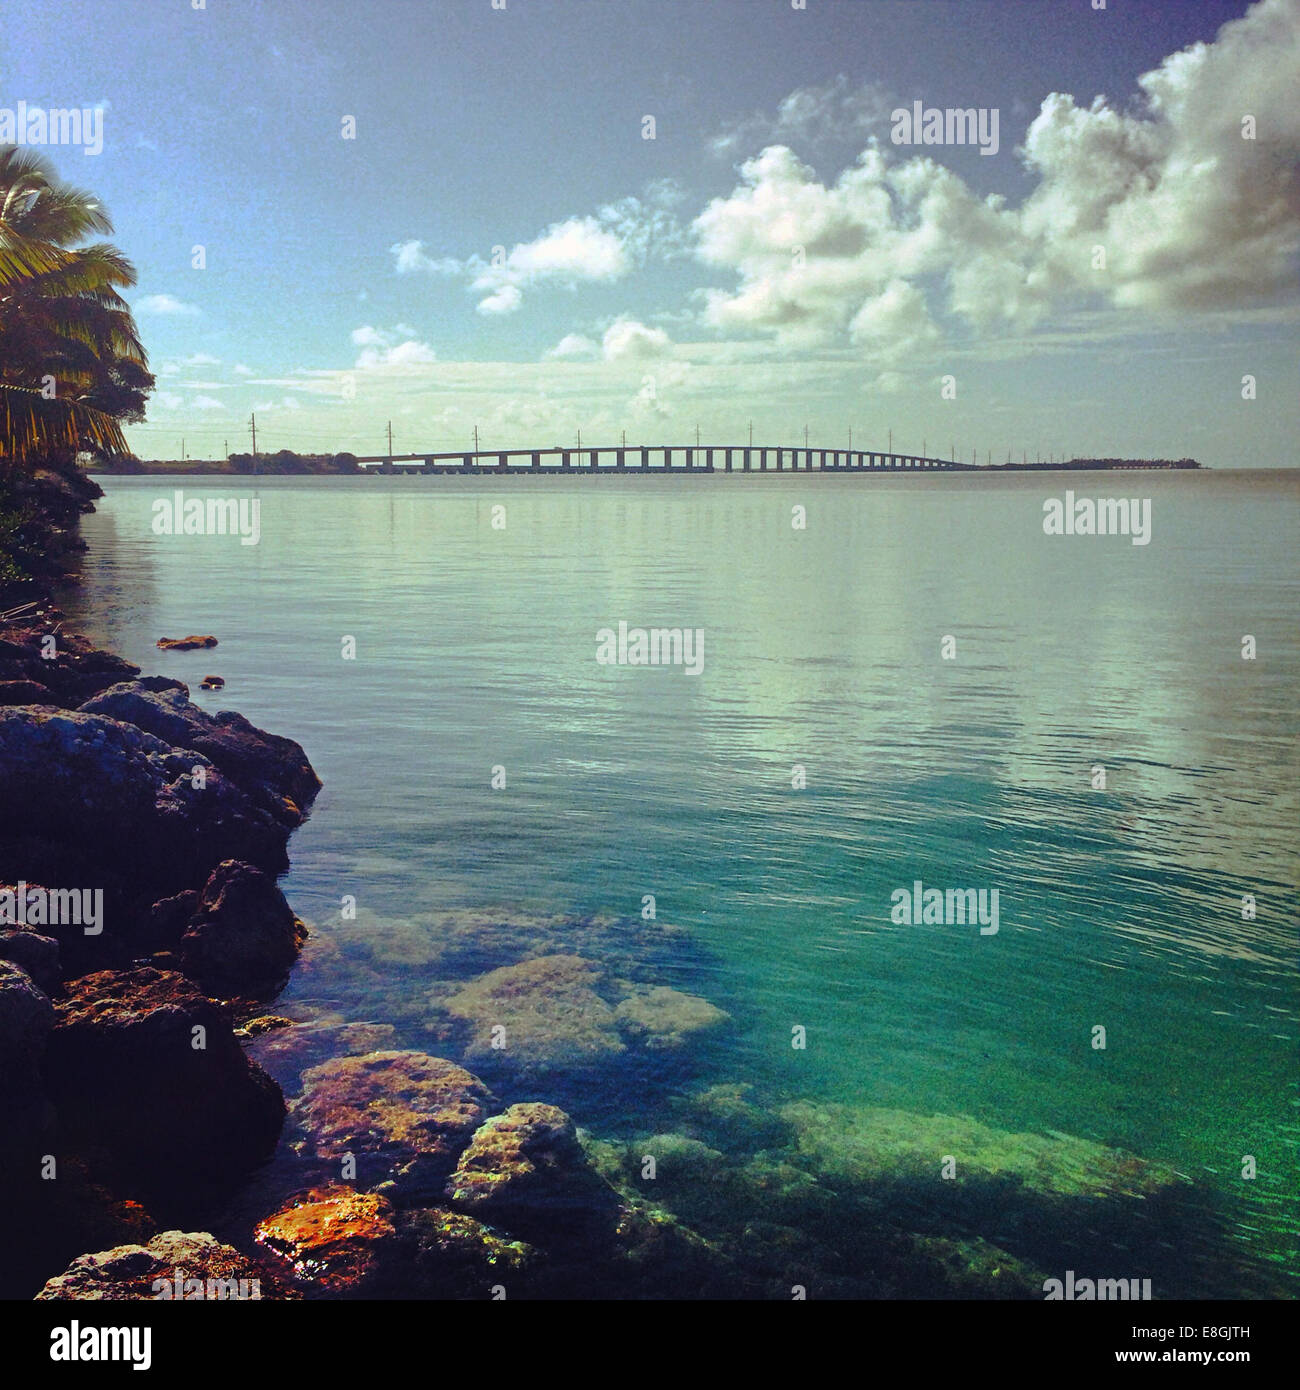 Key West, Florida, United States Stock Photo